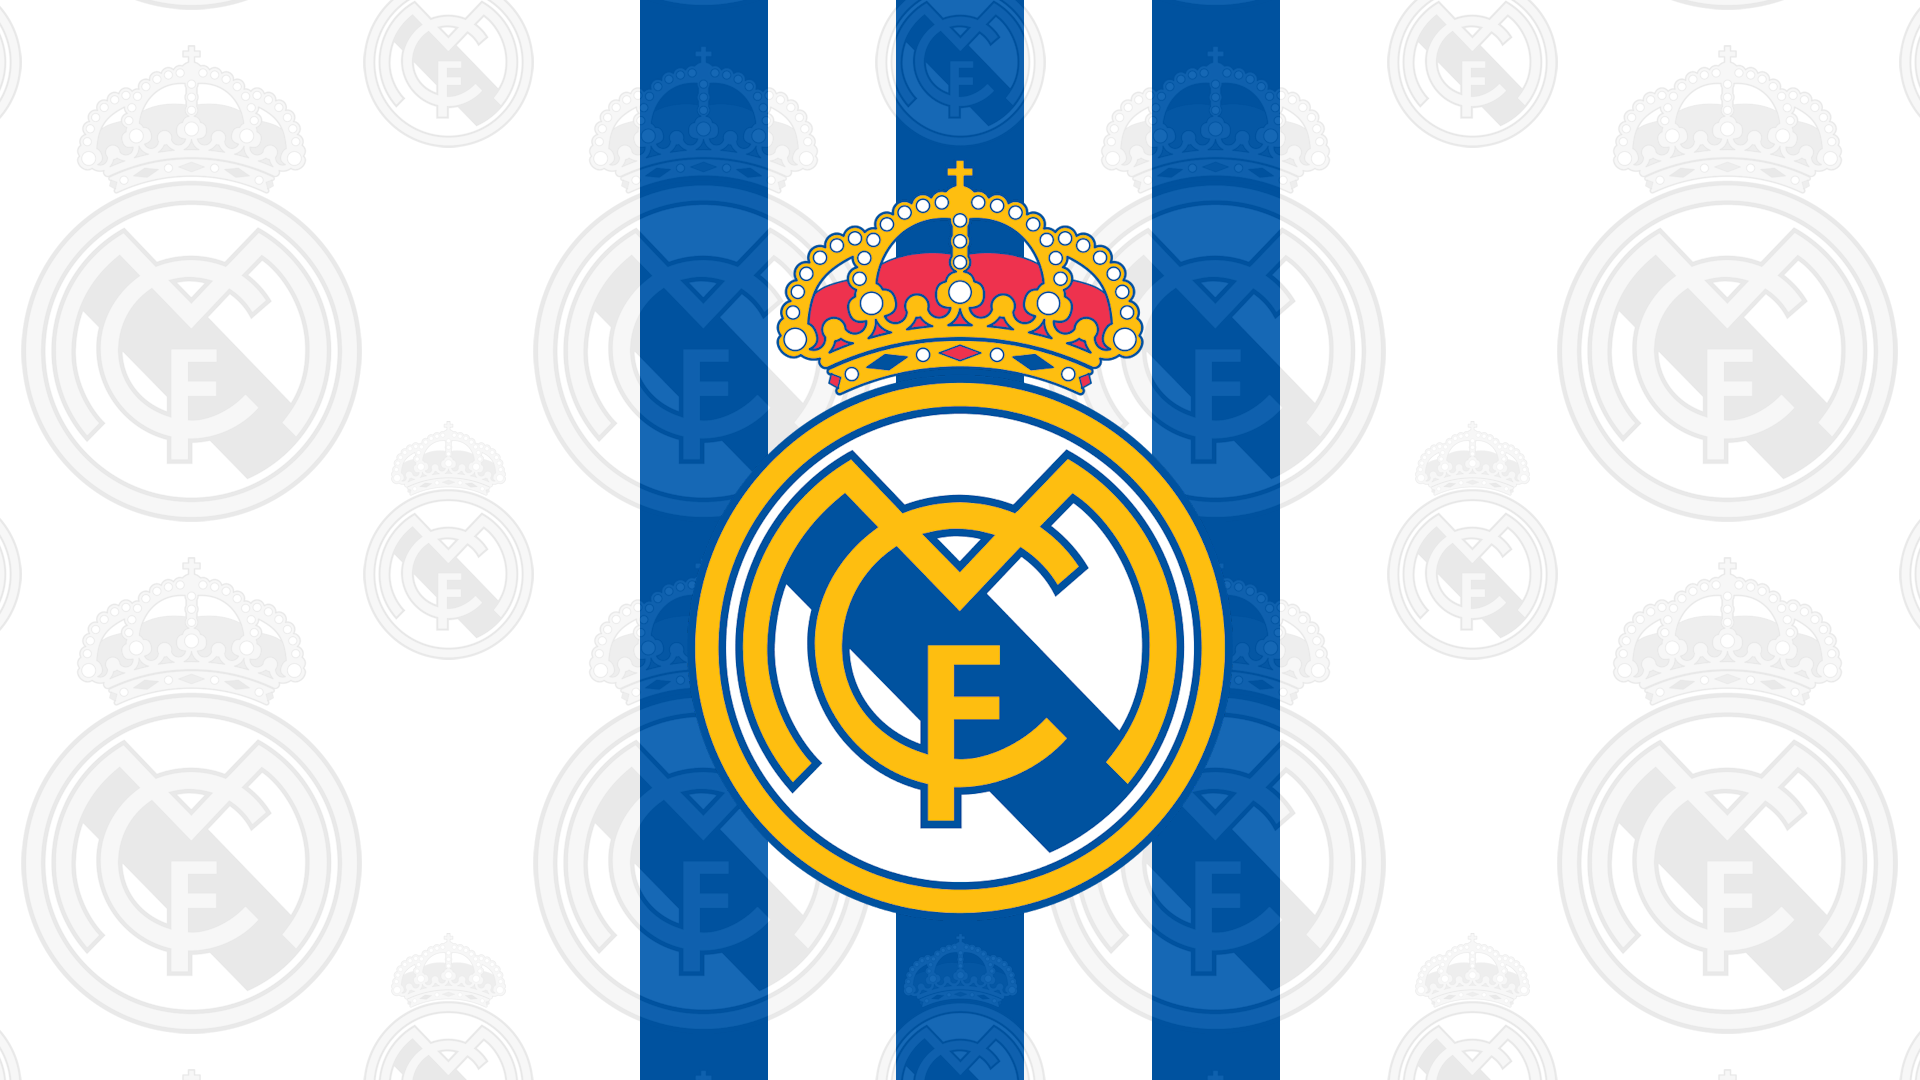 Este es un paquete de avatar y fondos de pantalla para @realmadrid - Real Madrid